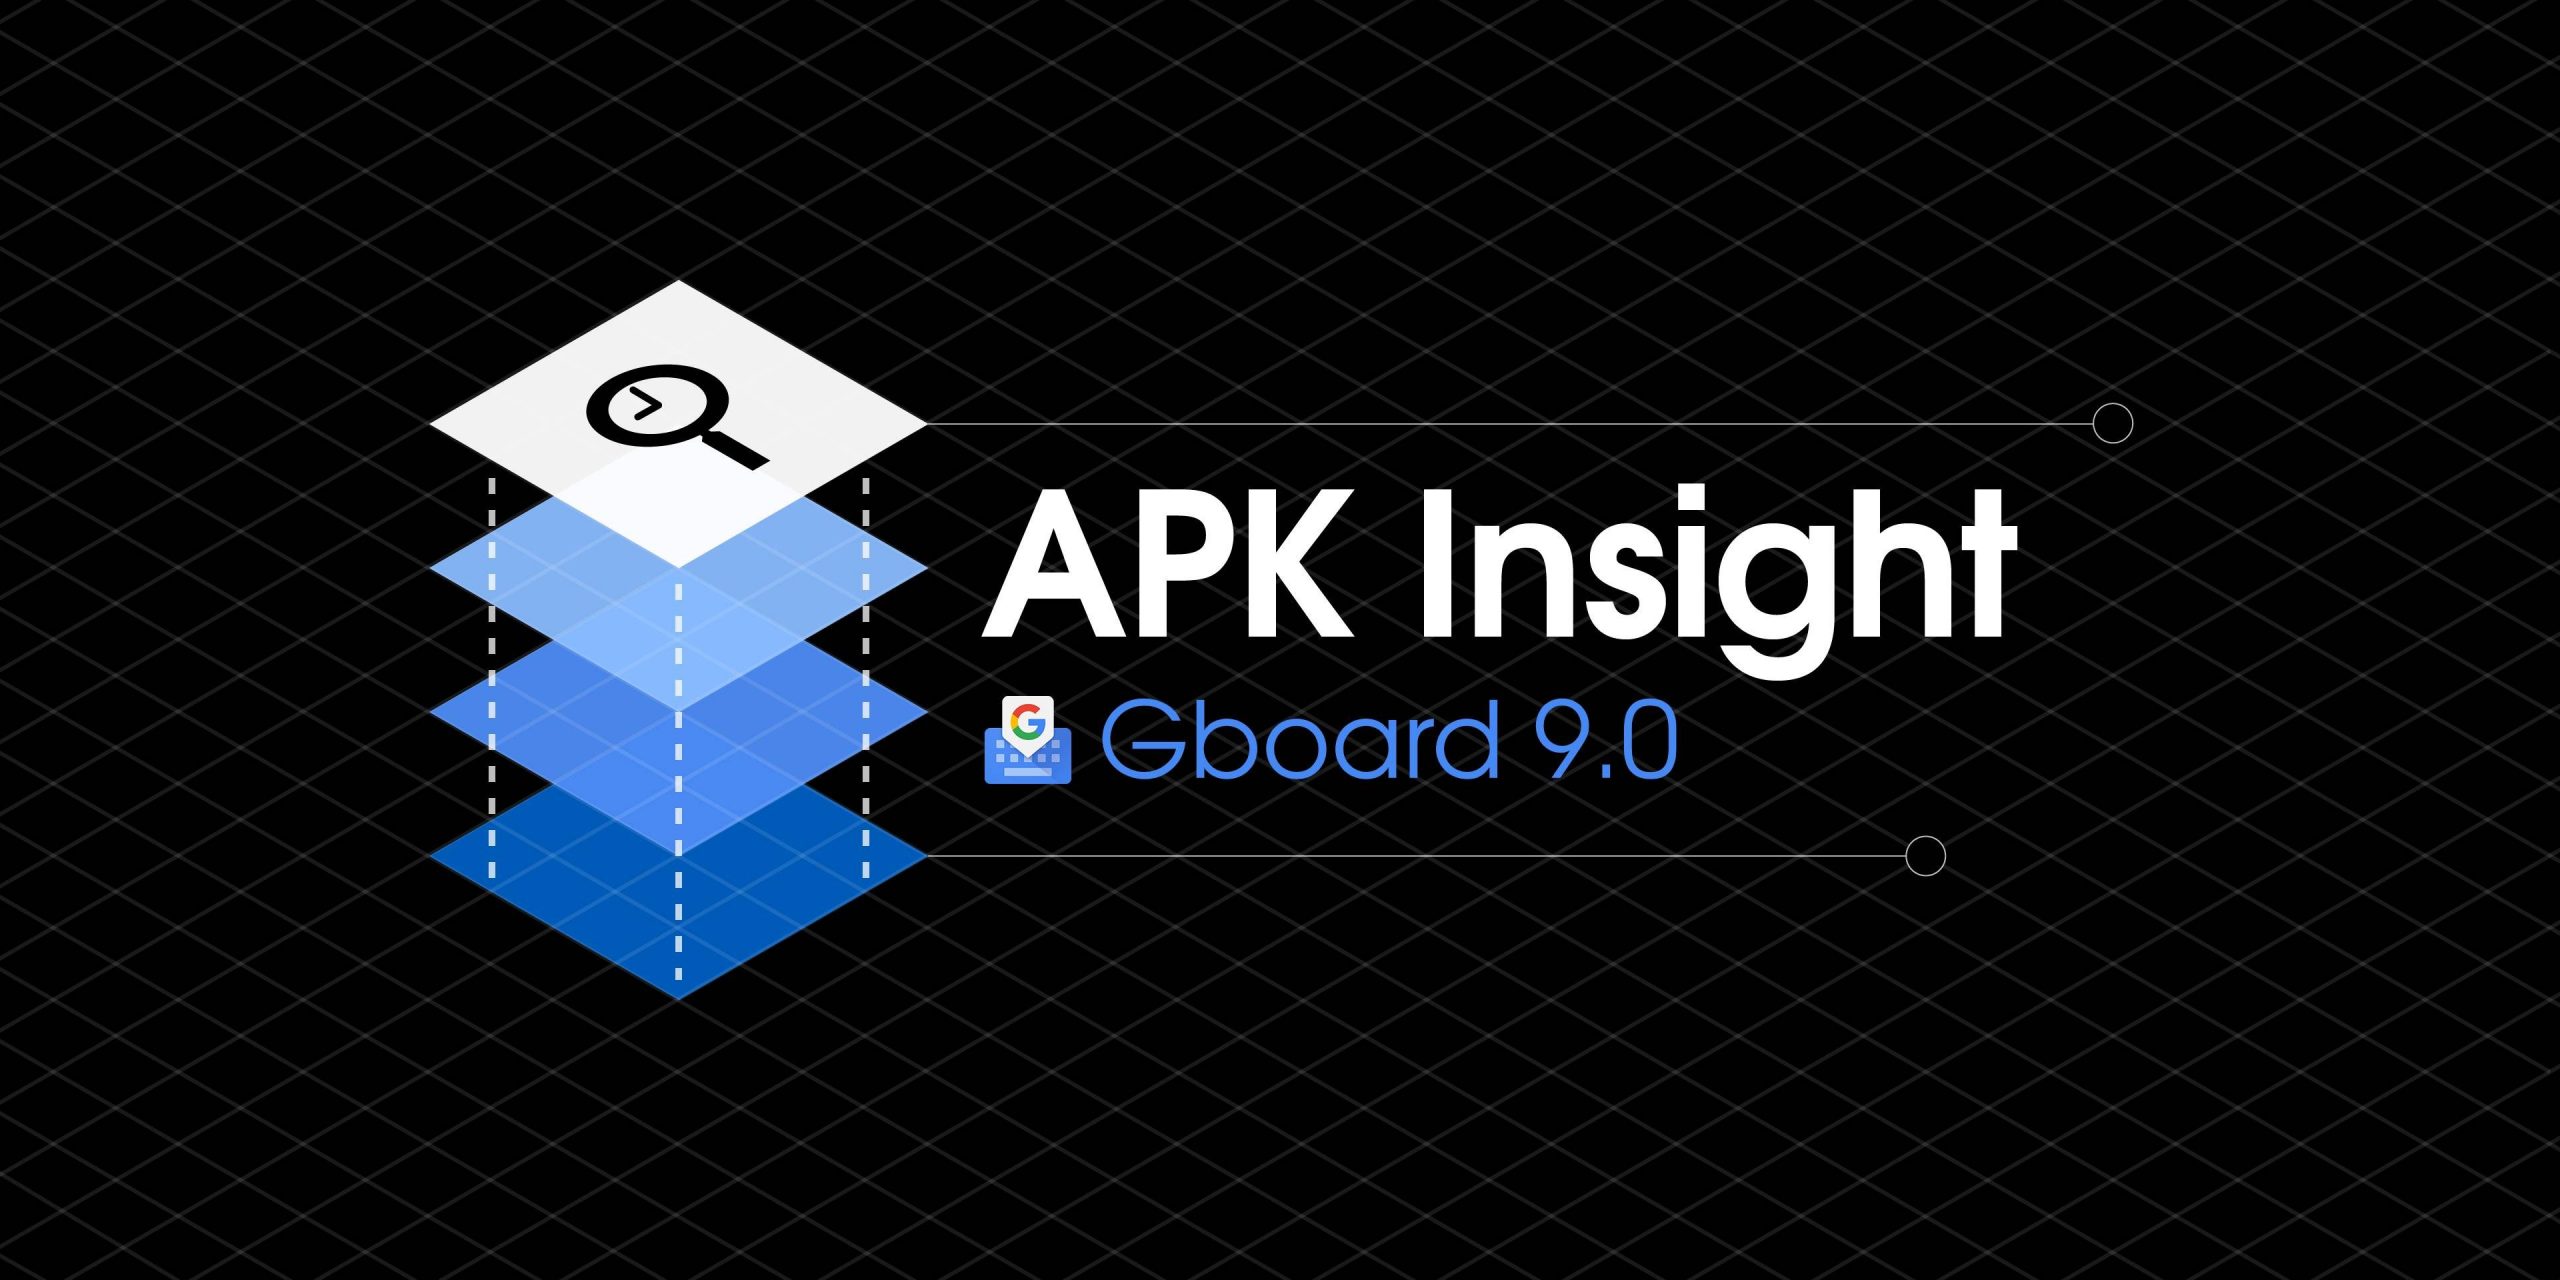 Gboard 9.0 prepara exclusão precisa, ajustes de digitação por voz [APK Insight]